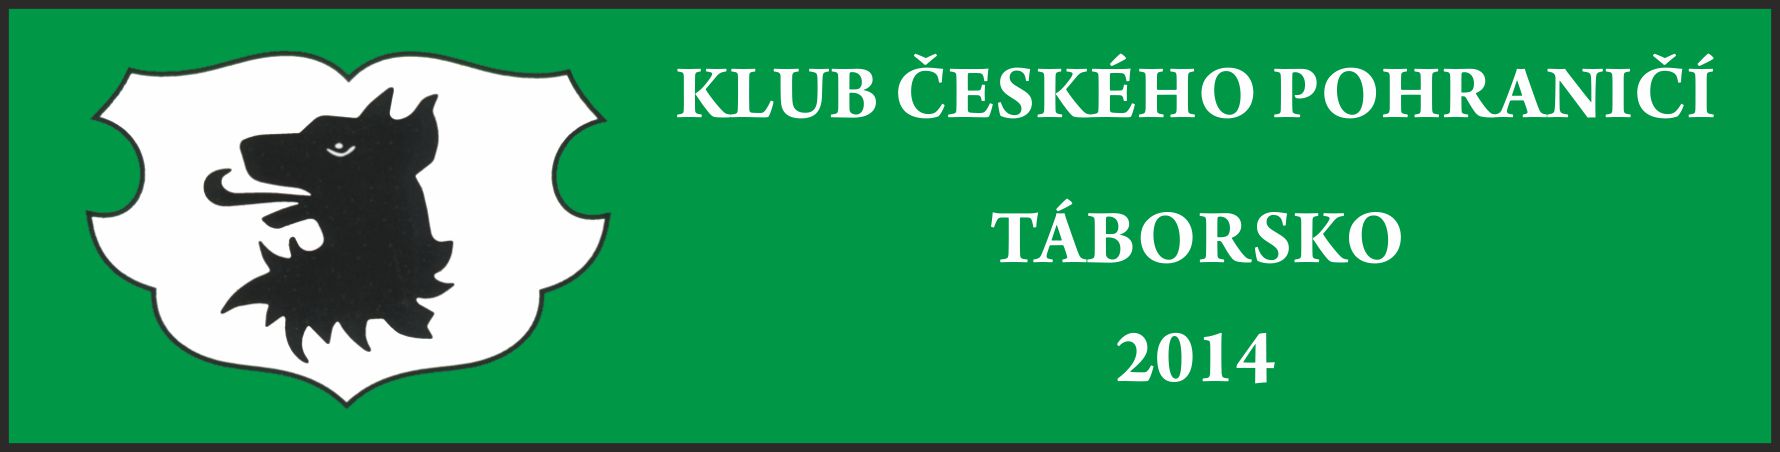 Klub českého pohraničí na Táborsku ustaven